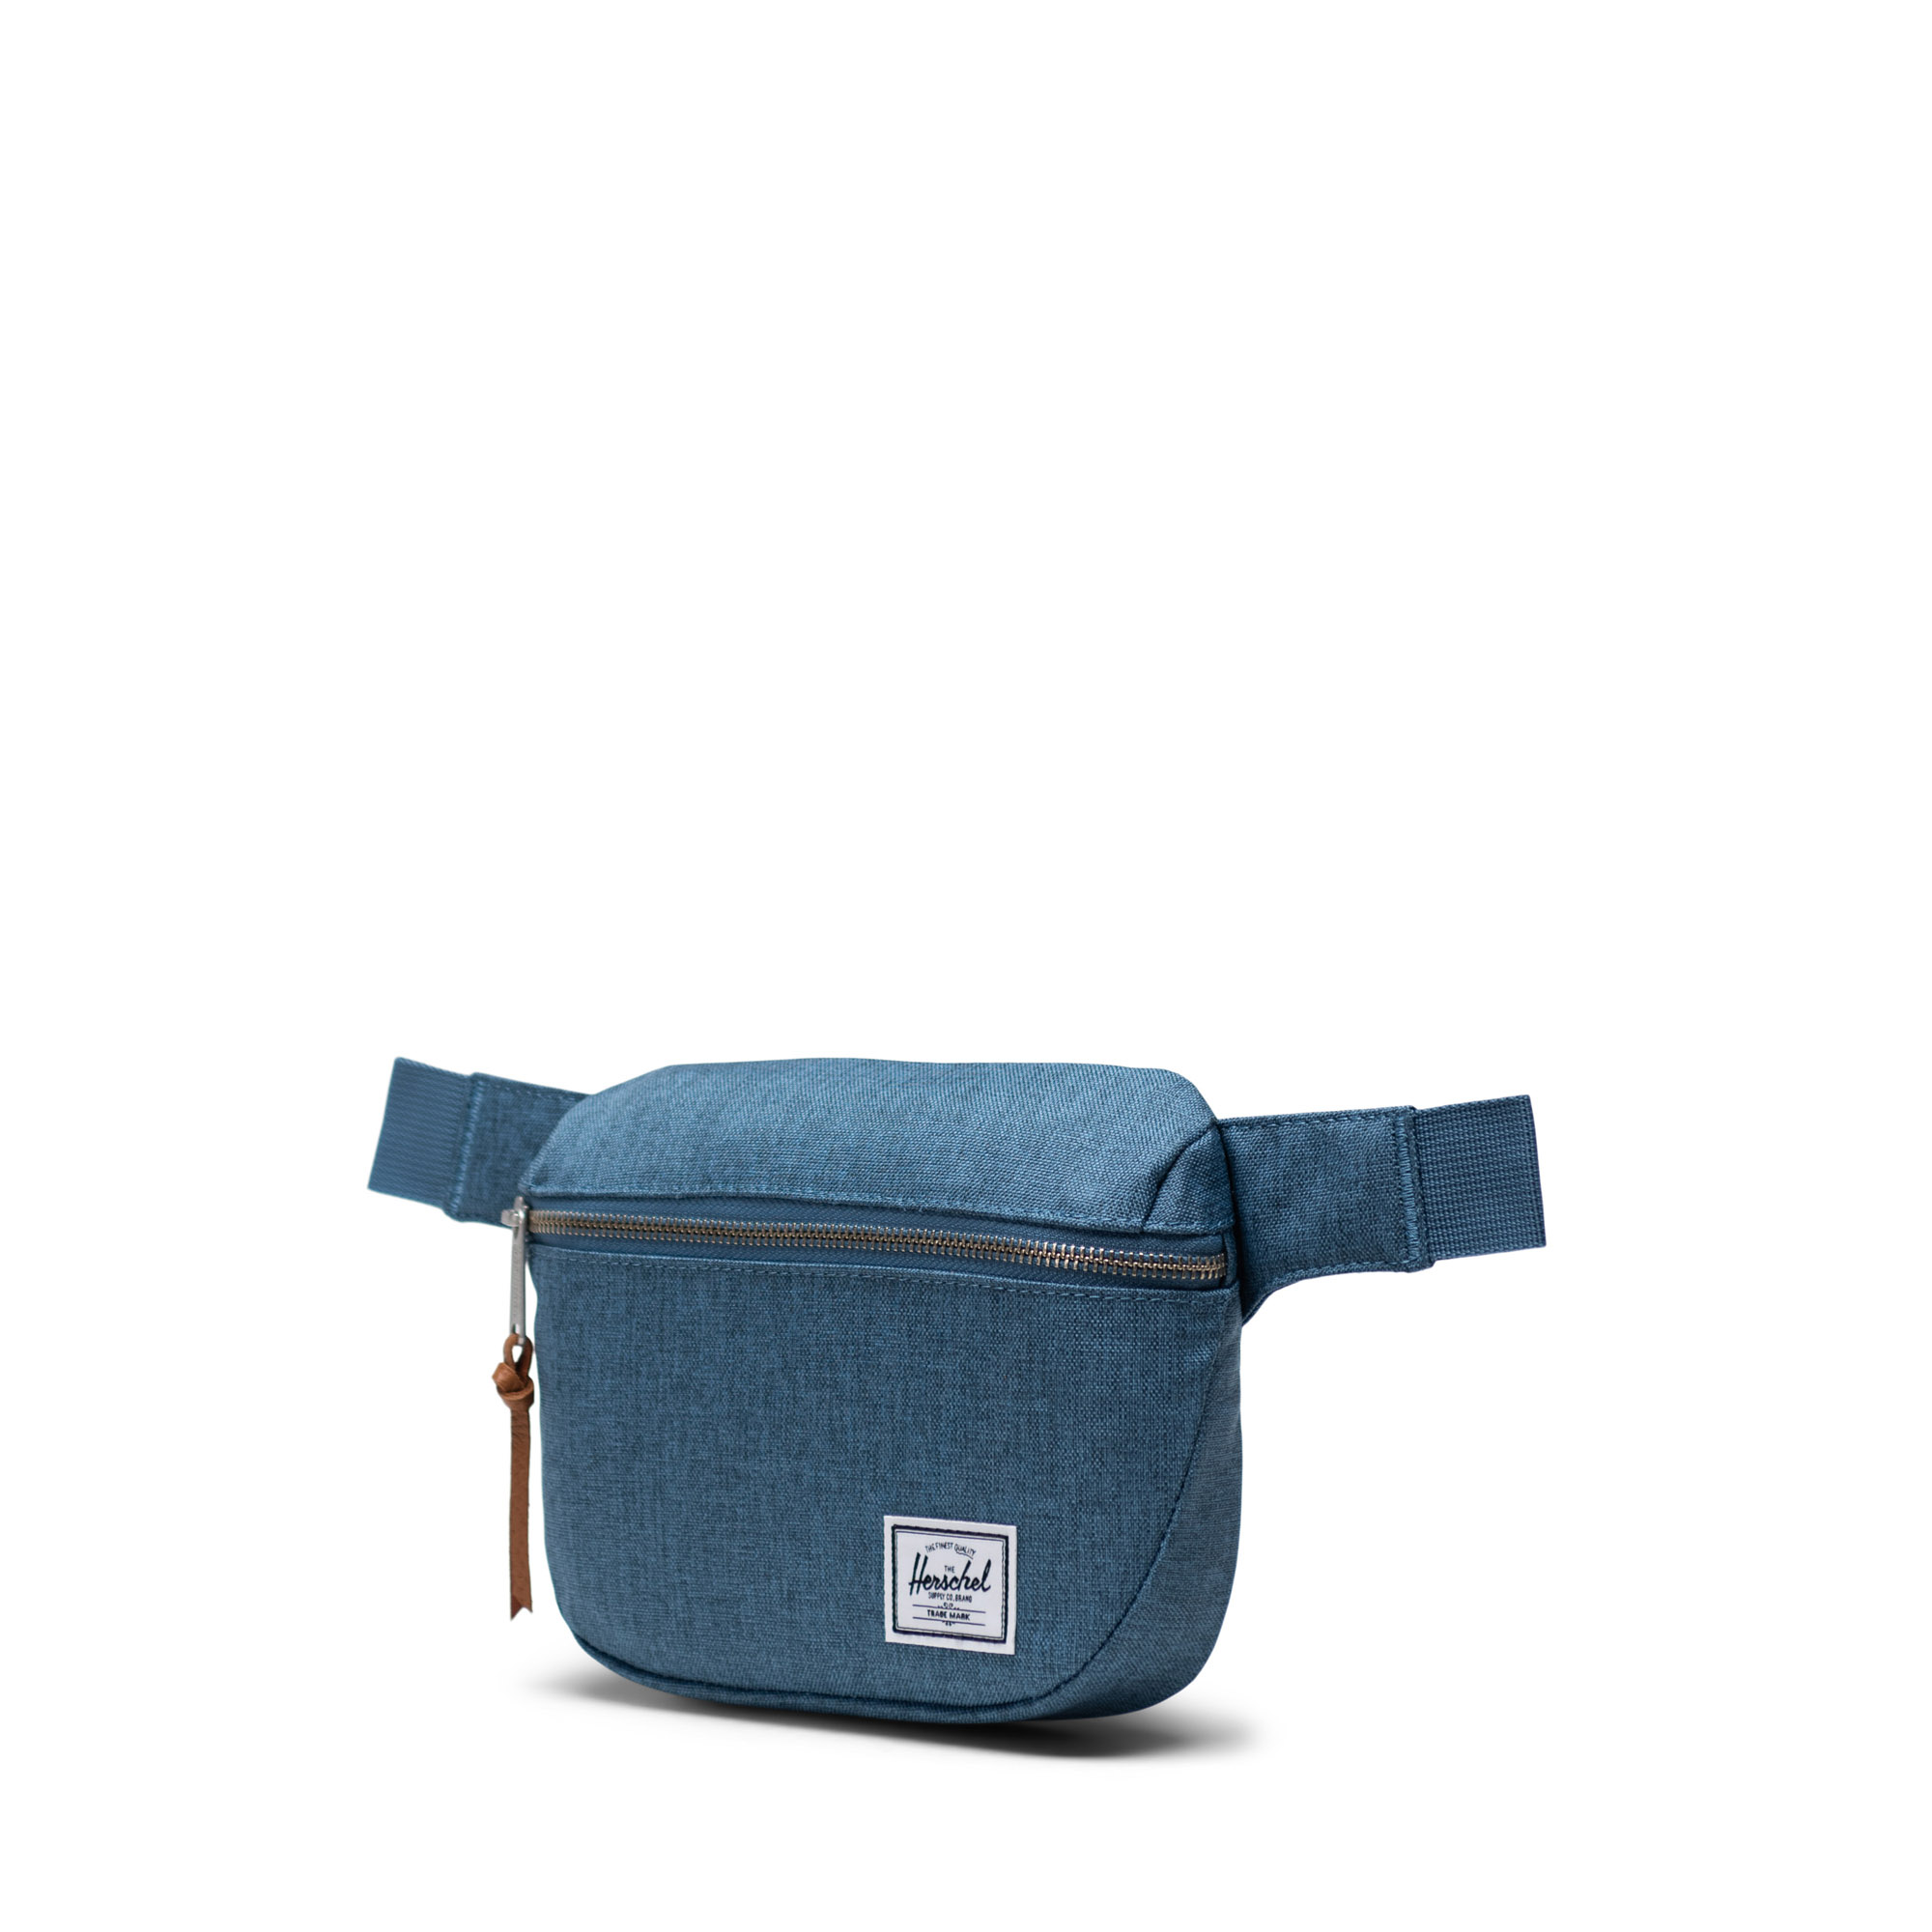 Fifteen Hip Pack Bag | Herschel Supply Co.